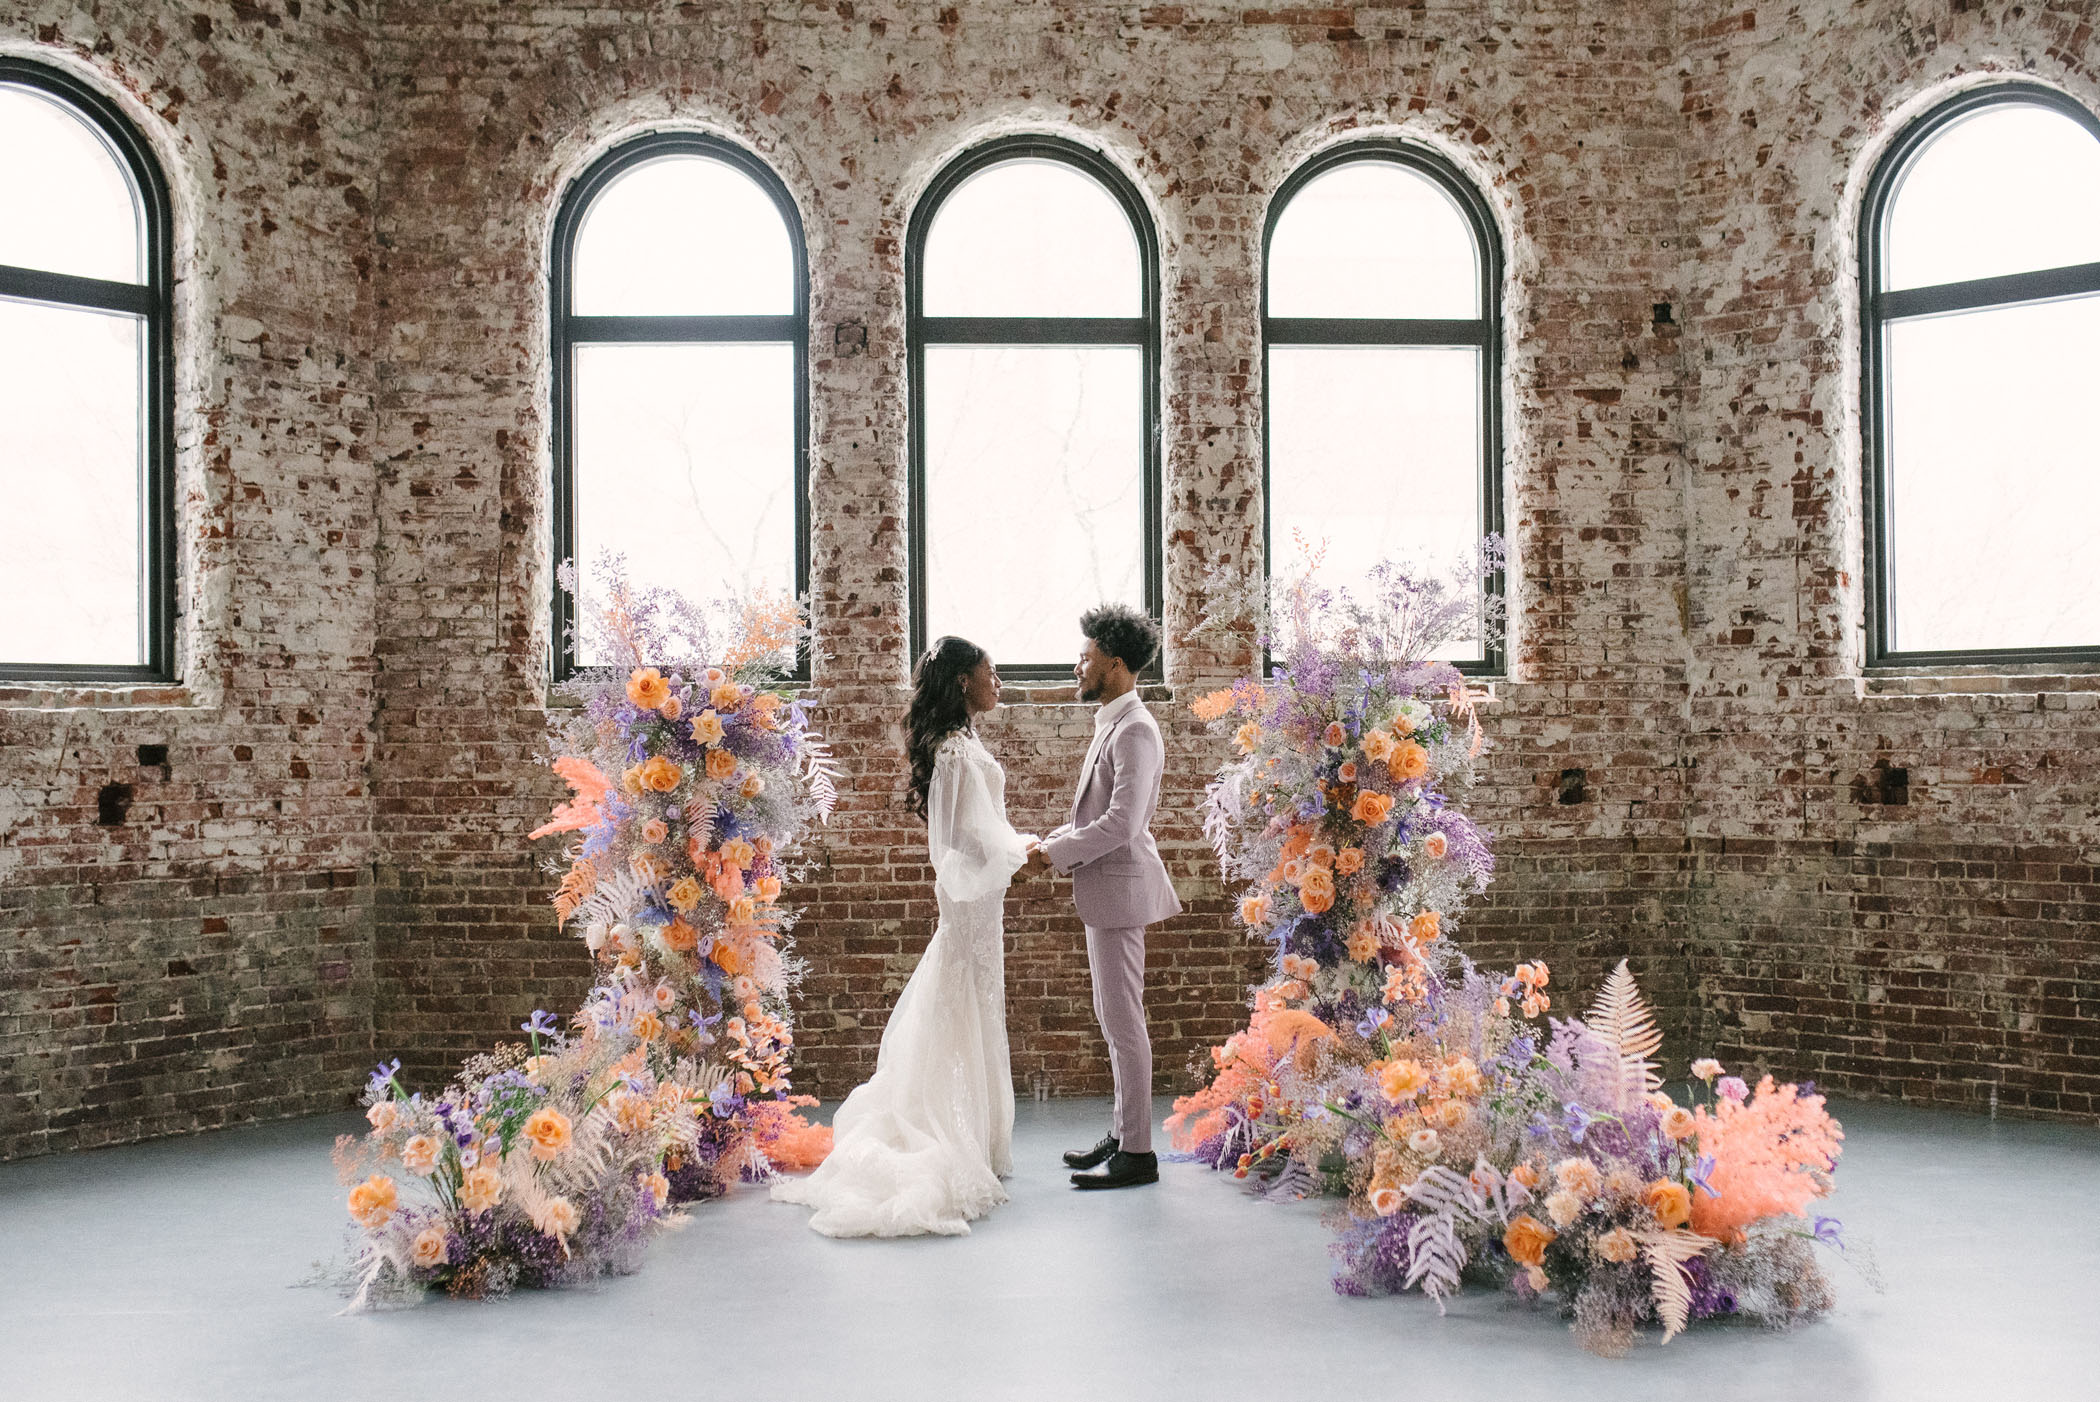 Purple and orange wedding ceremony flowers